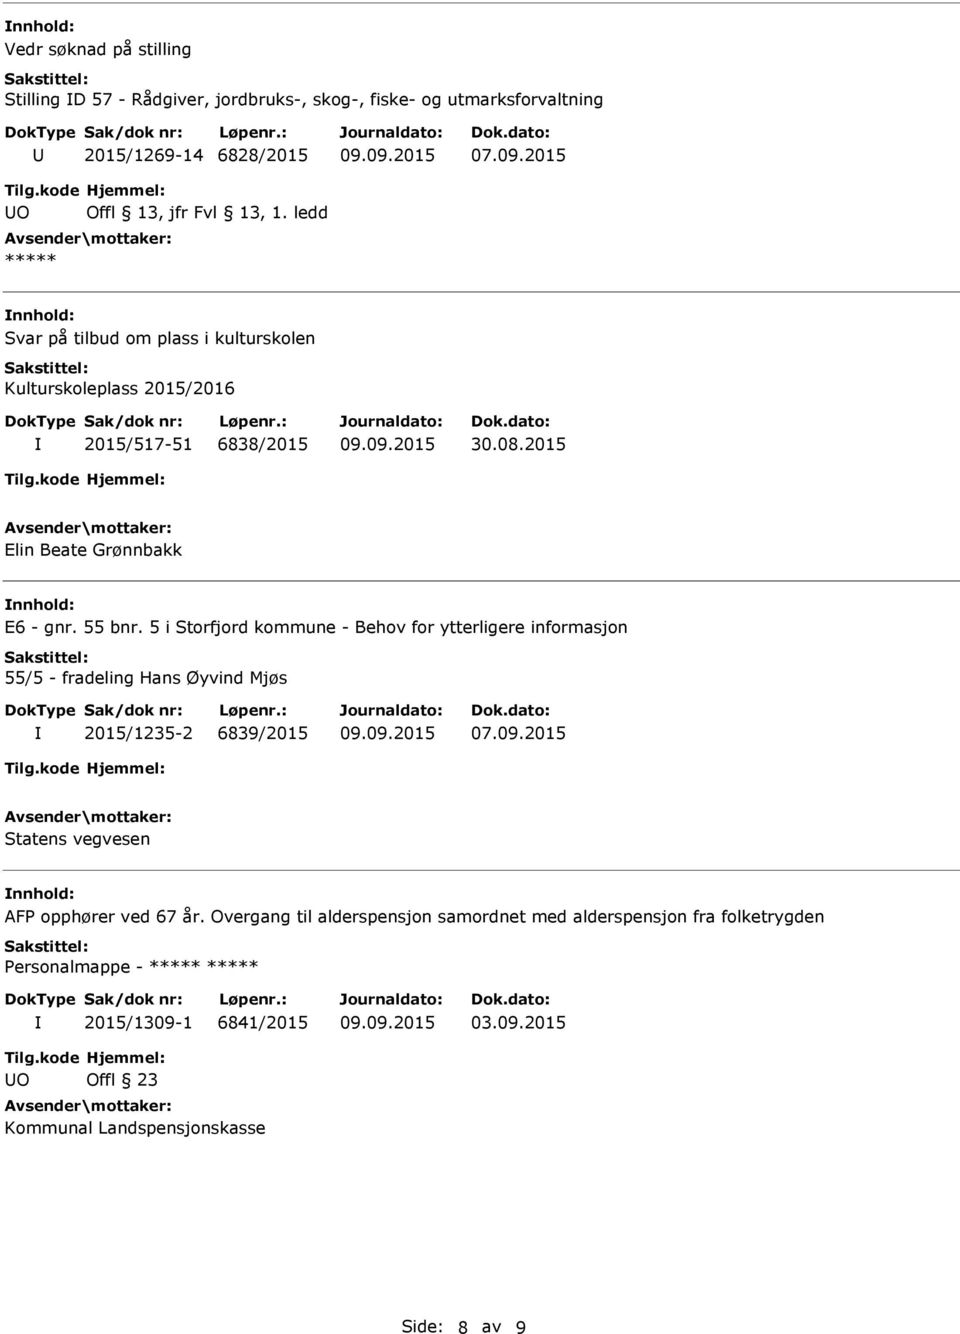 5 i Storfjord kommune - Behov for ytterligere informasjon 55/5 - fradeling Hans Øyvind Mjøs 2015/1235-2 6839/2015 07.09.